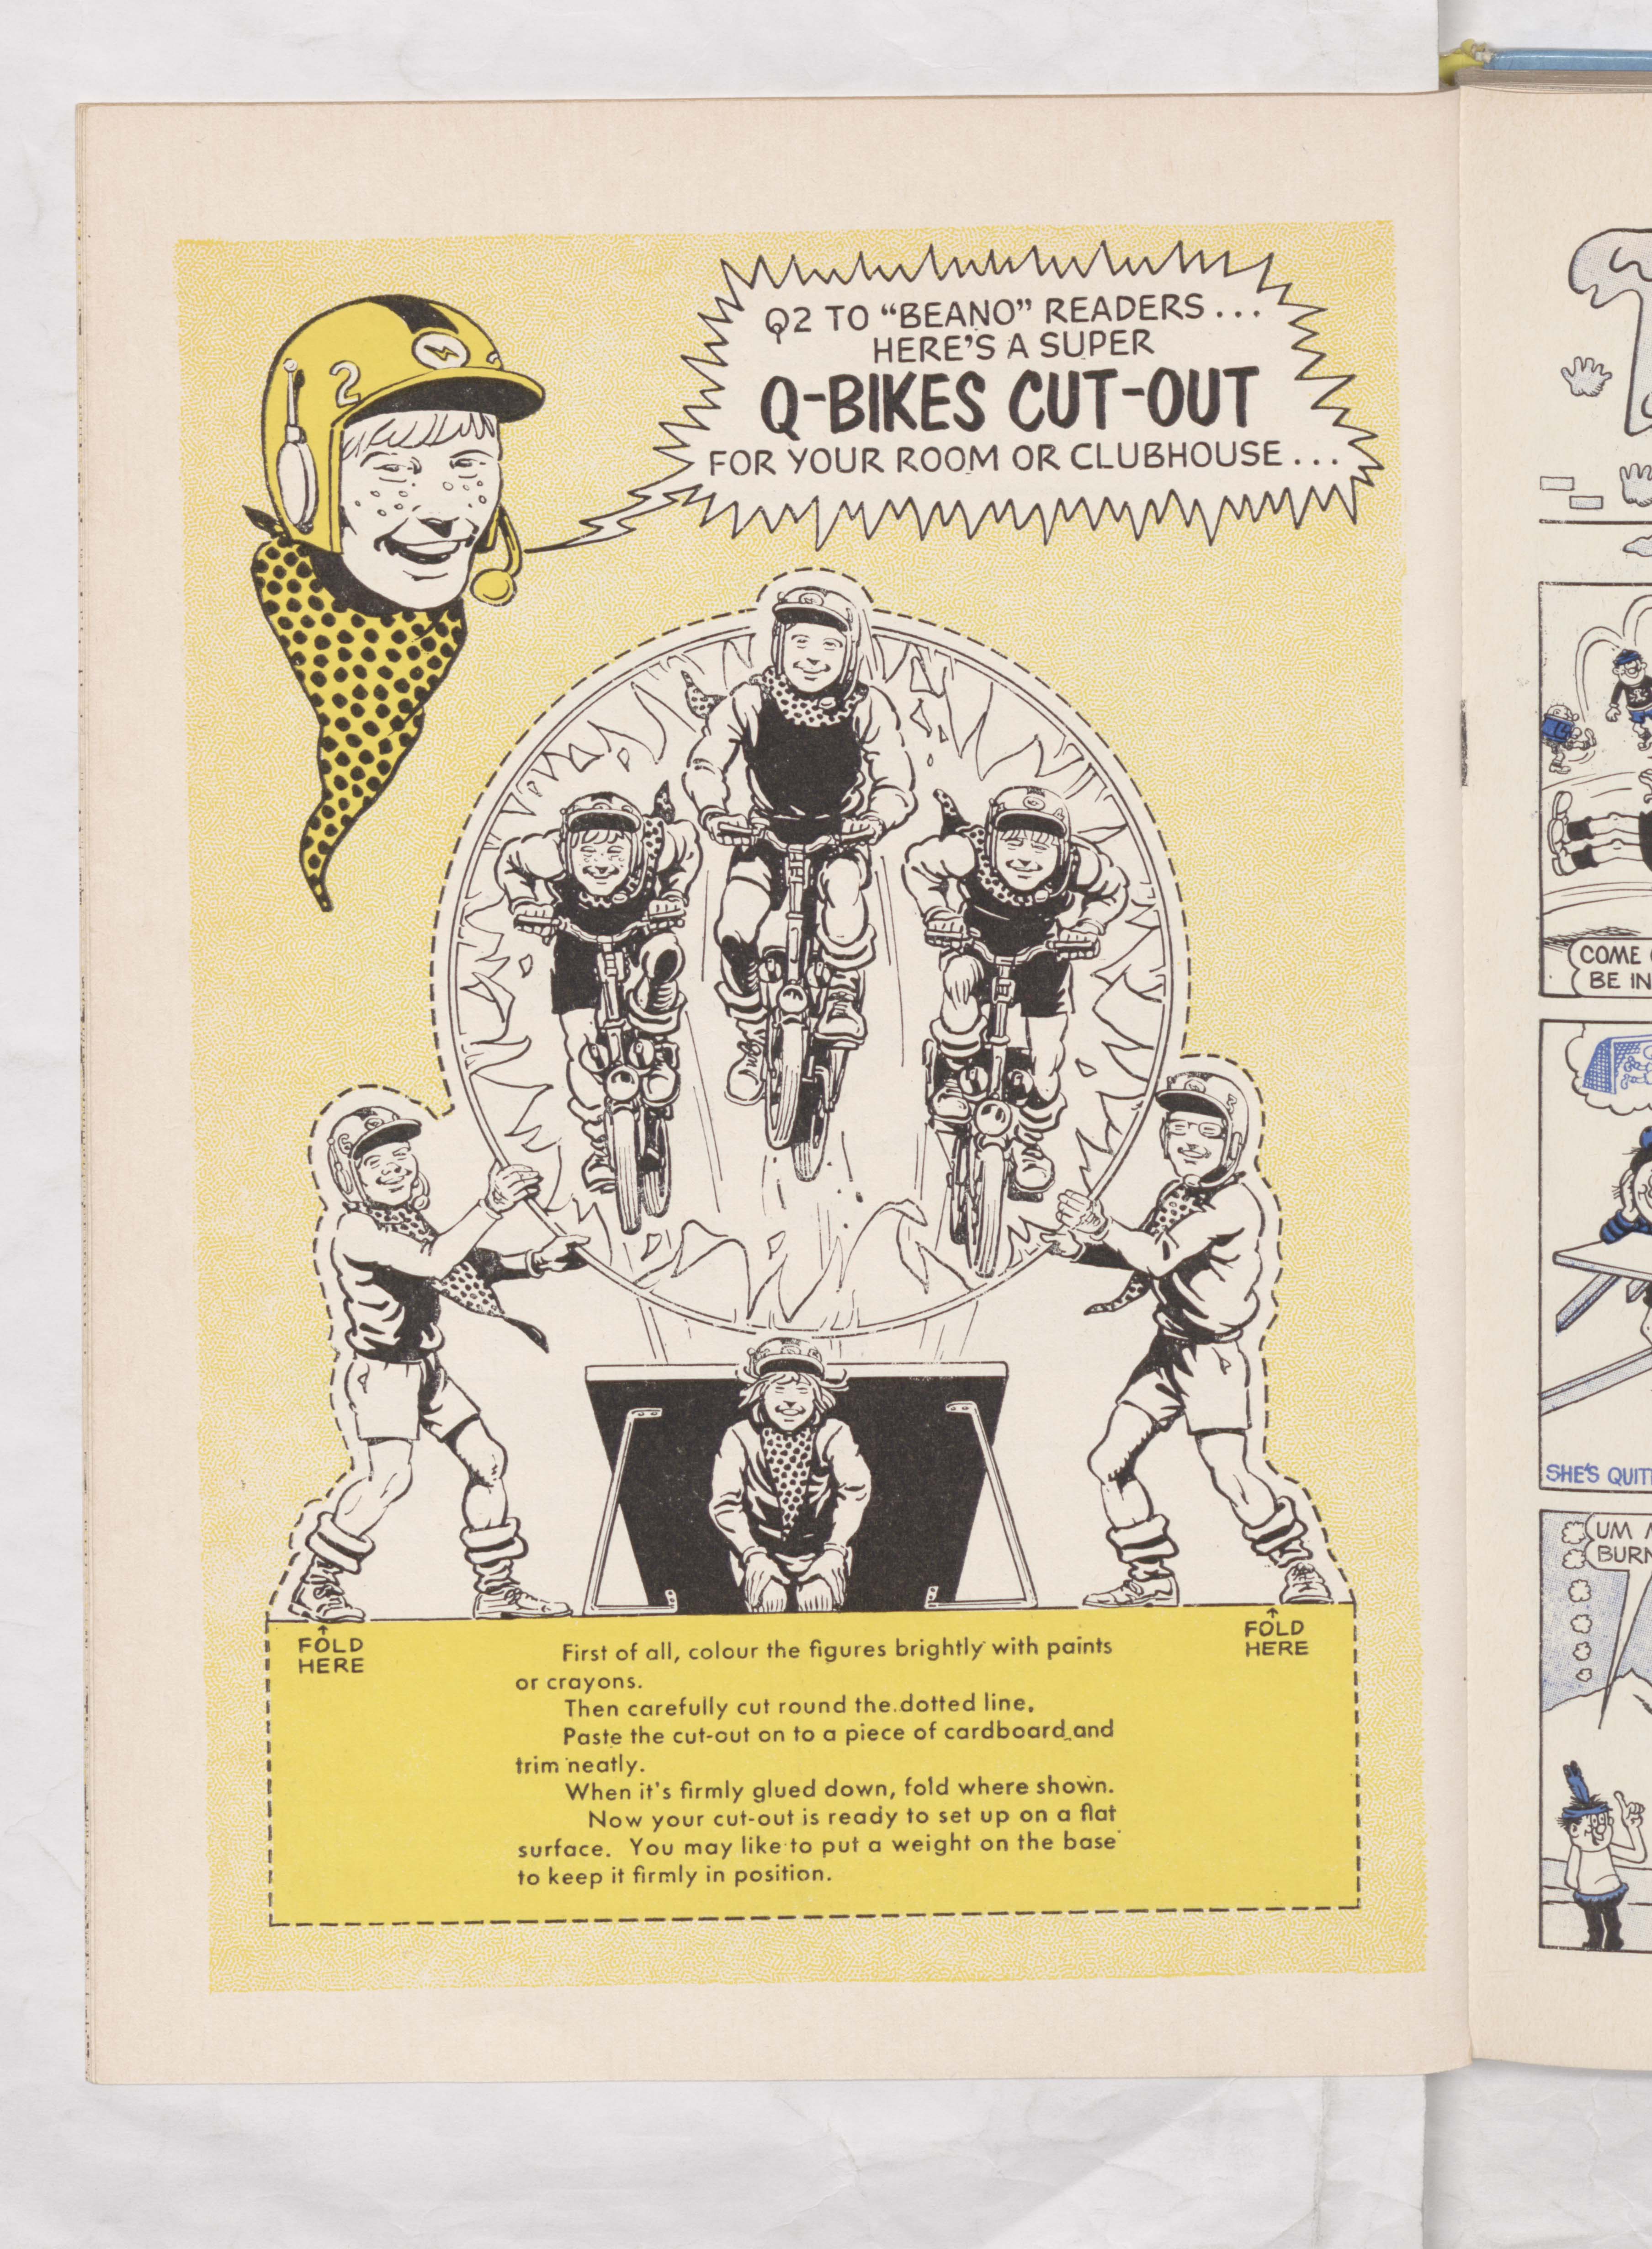 Beano Book 1970 - Q-Bikes - Page 16 cutout